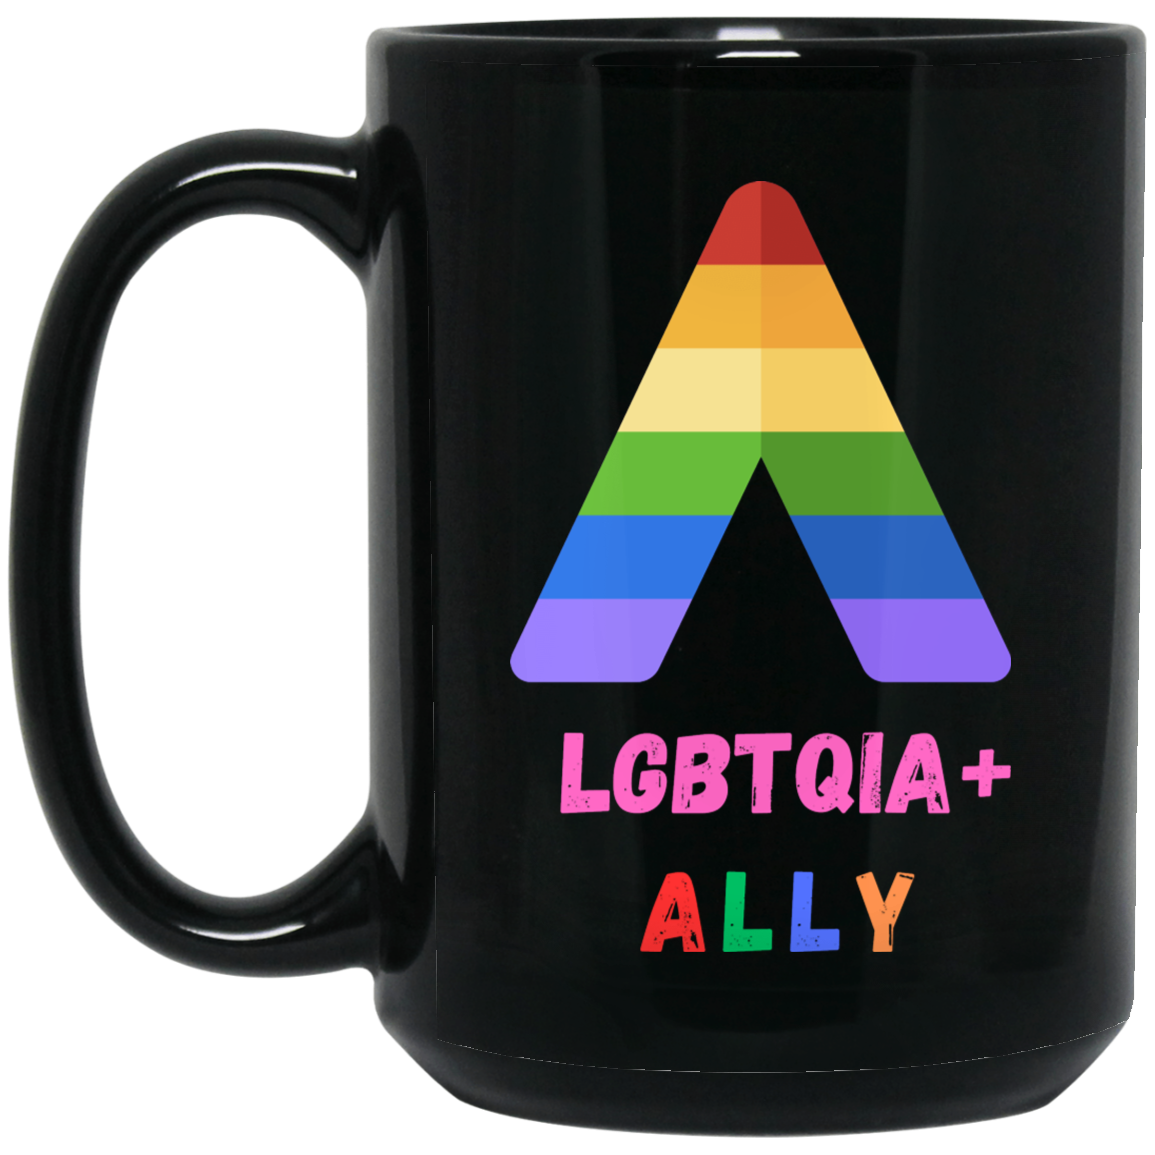 ALLY LGBTQIA+ Mug